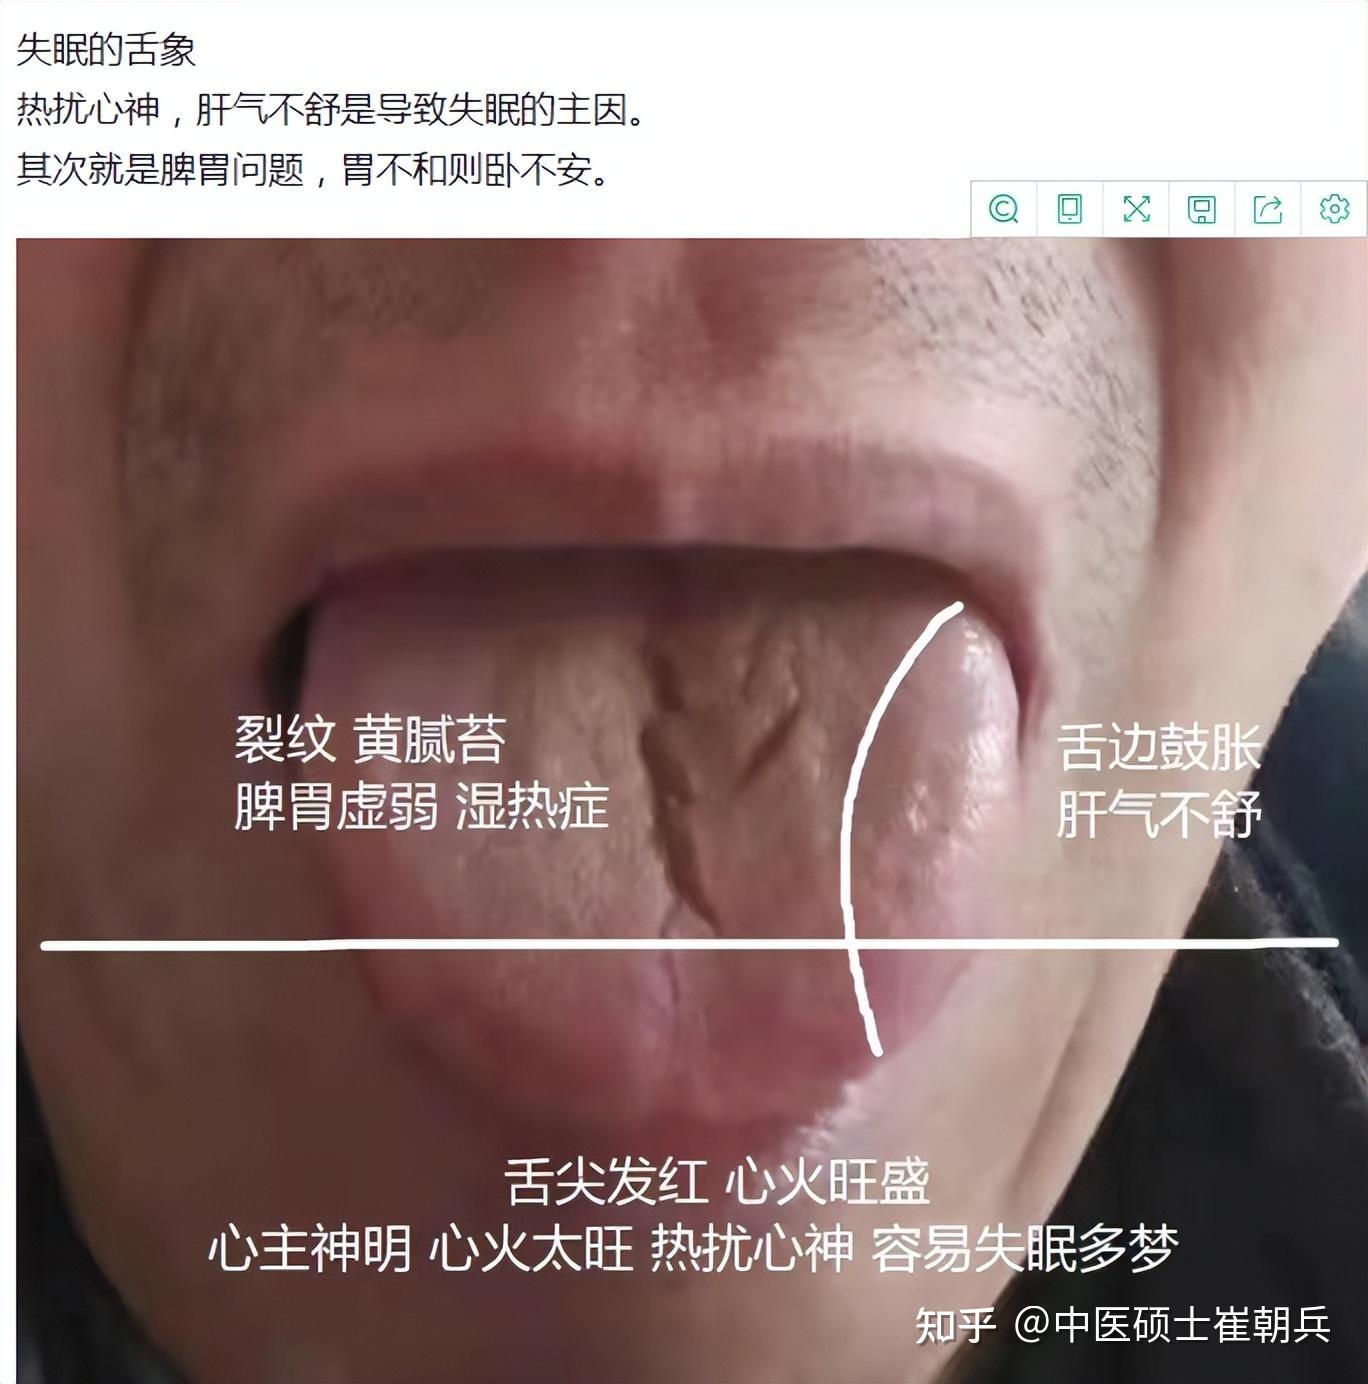 正常人的舌头红点图片,梅毒舌头早期症状图片 - 伤感说说吧